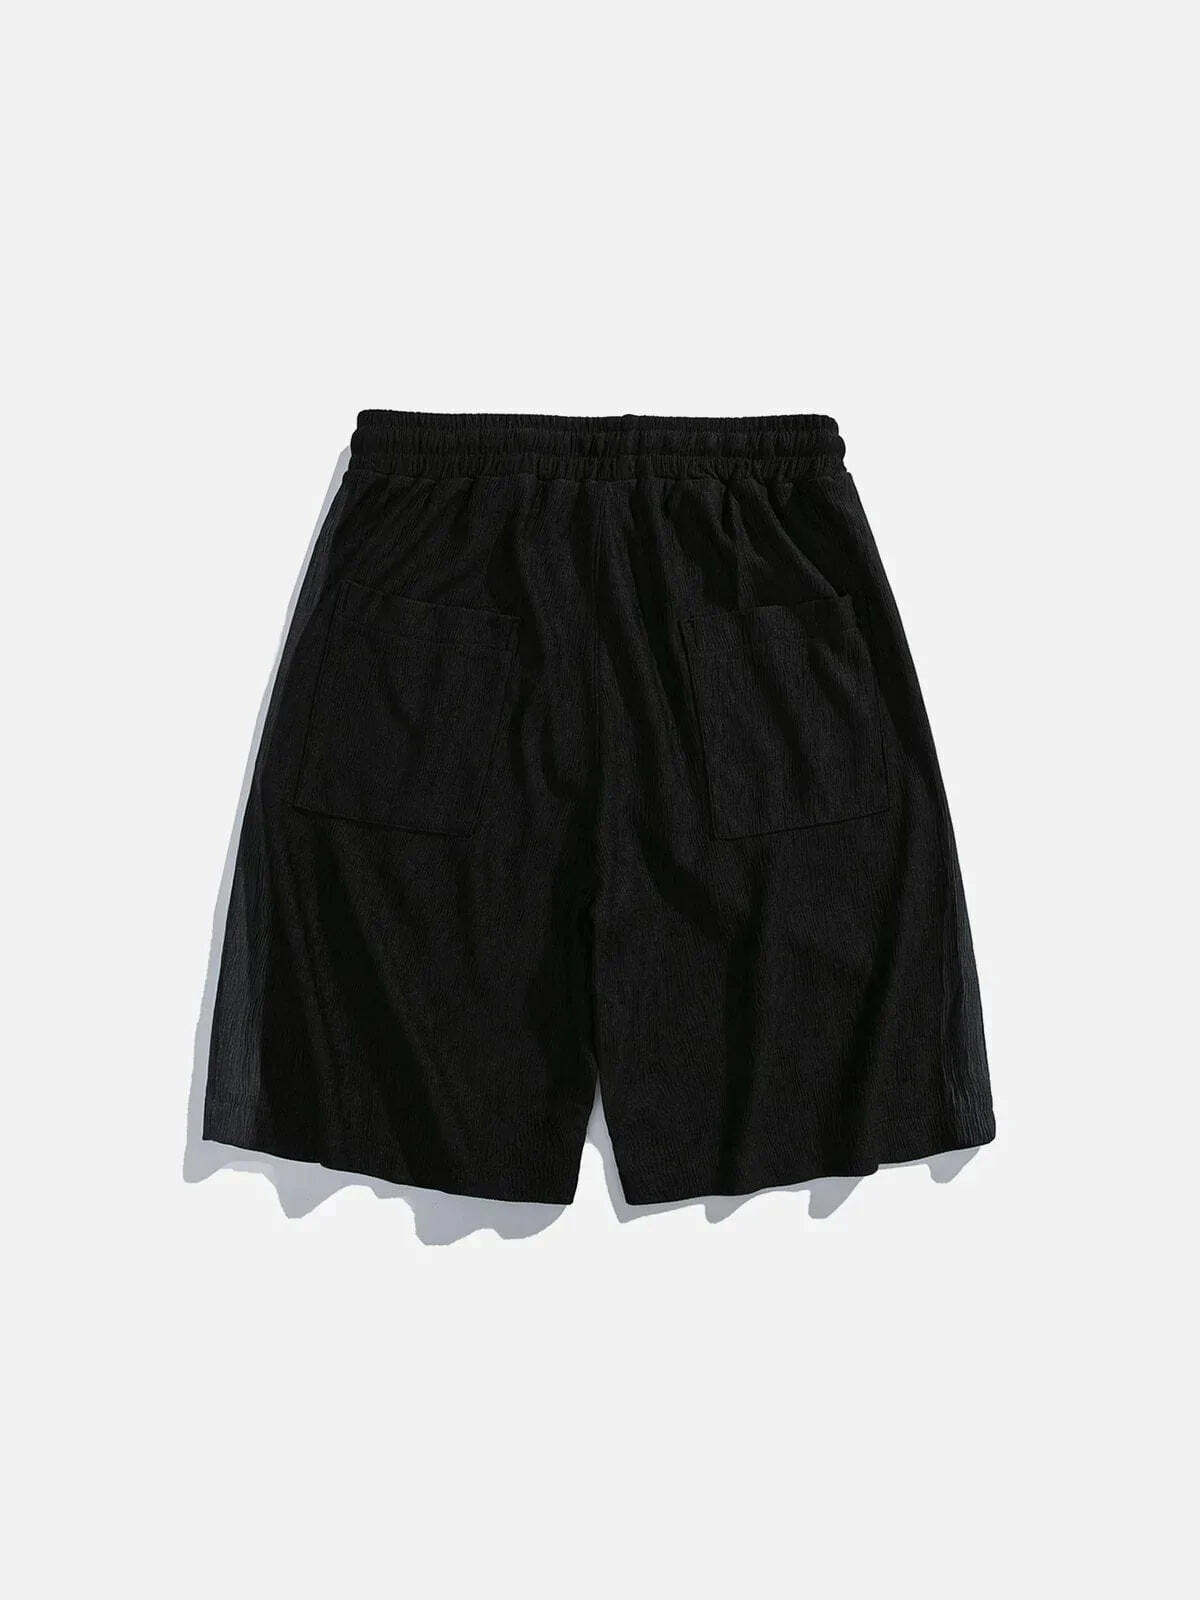 tie dye side shorts vibrant & retro streetwear 4066